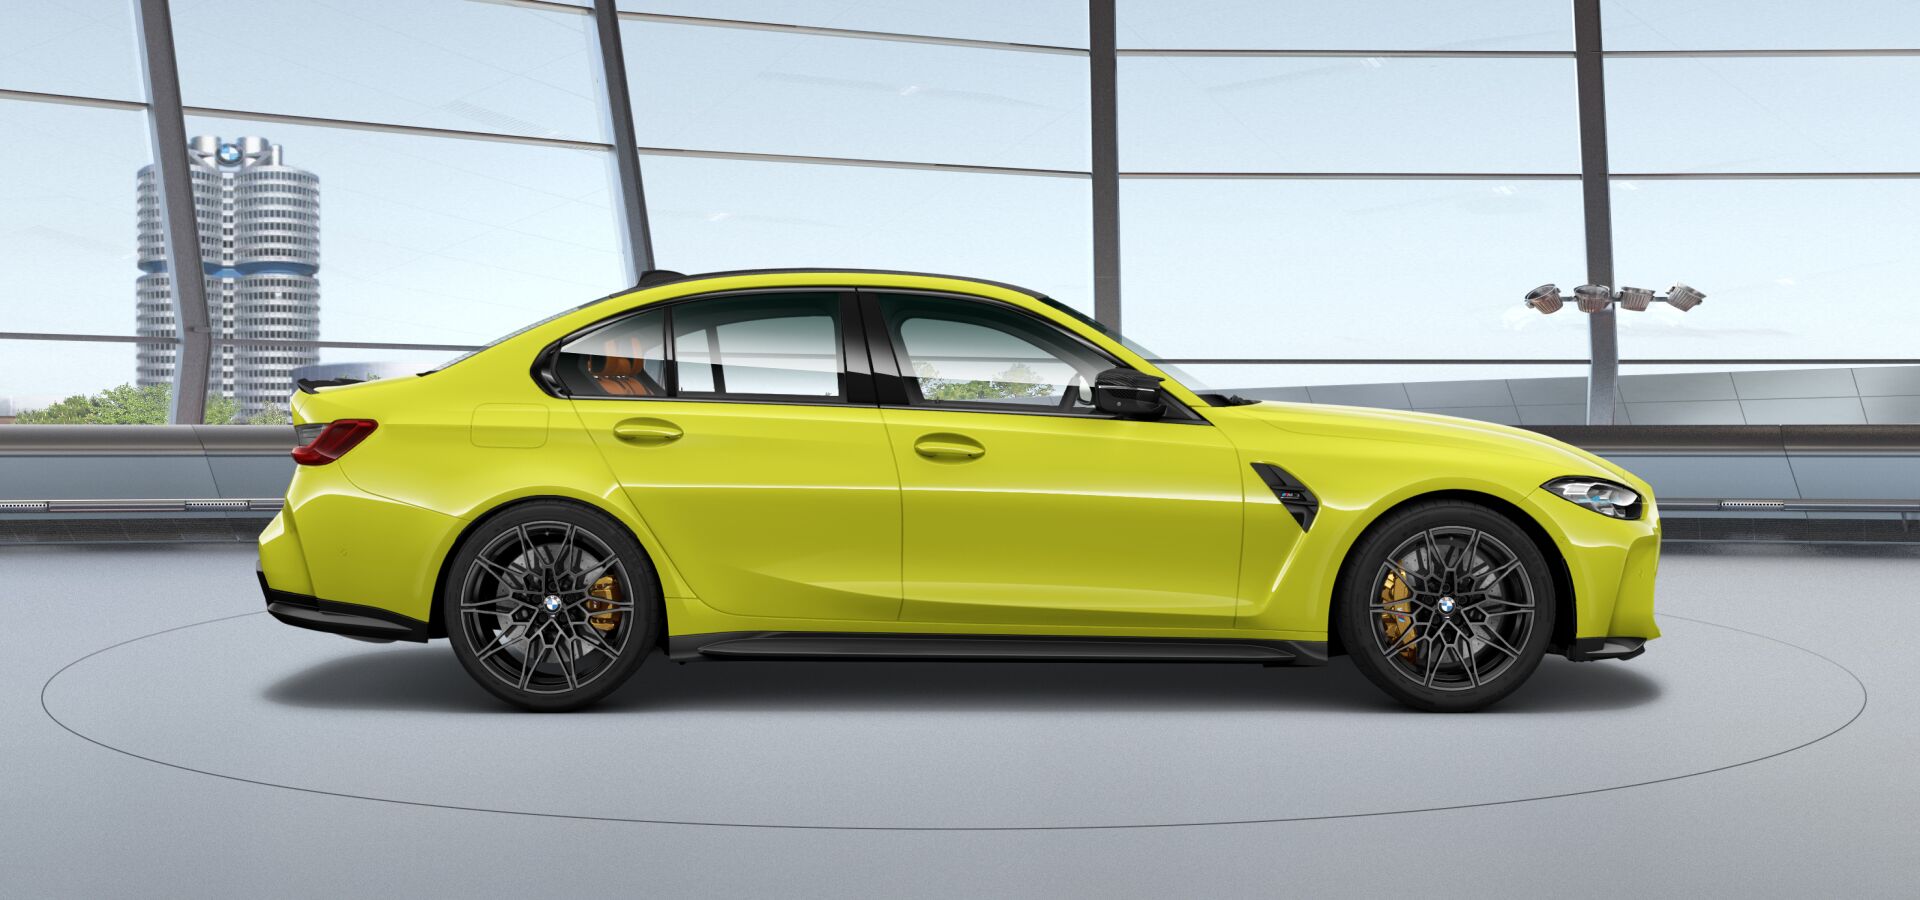 Nowe BMW M3 kosztuje 414 tys. zł. Ale tak naprawdę dużo więcej